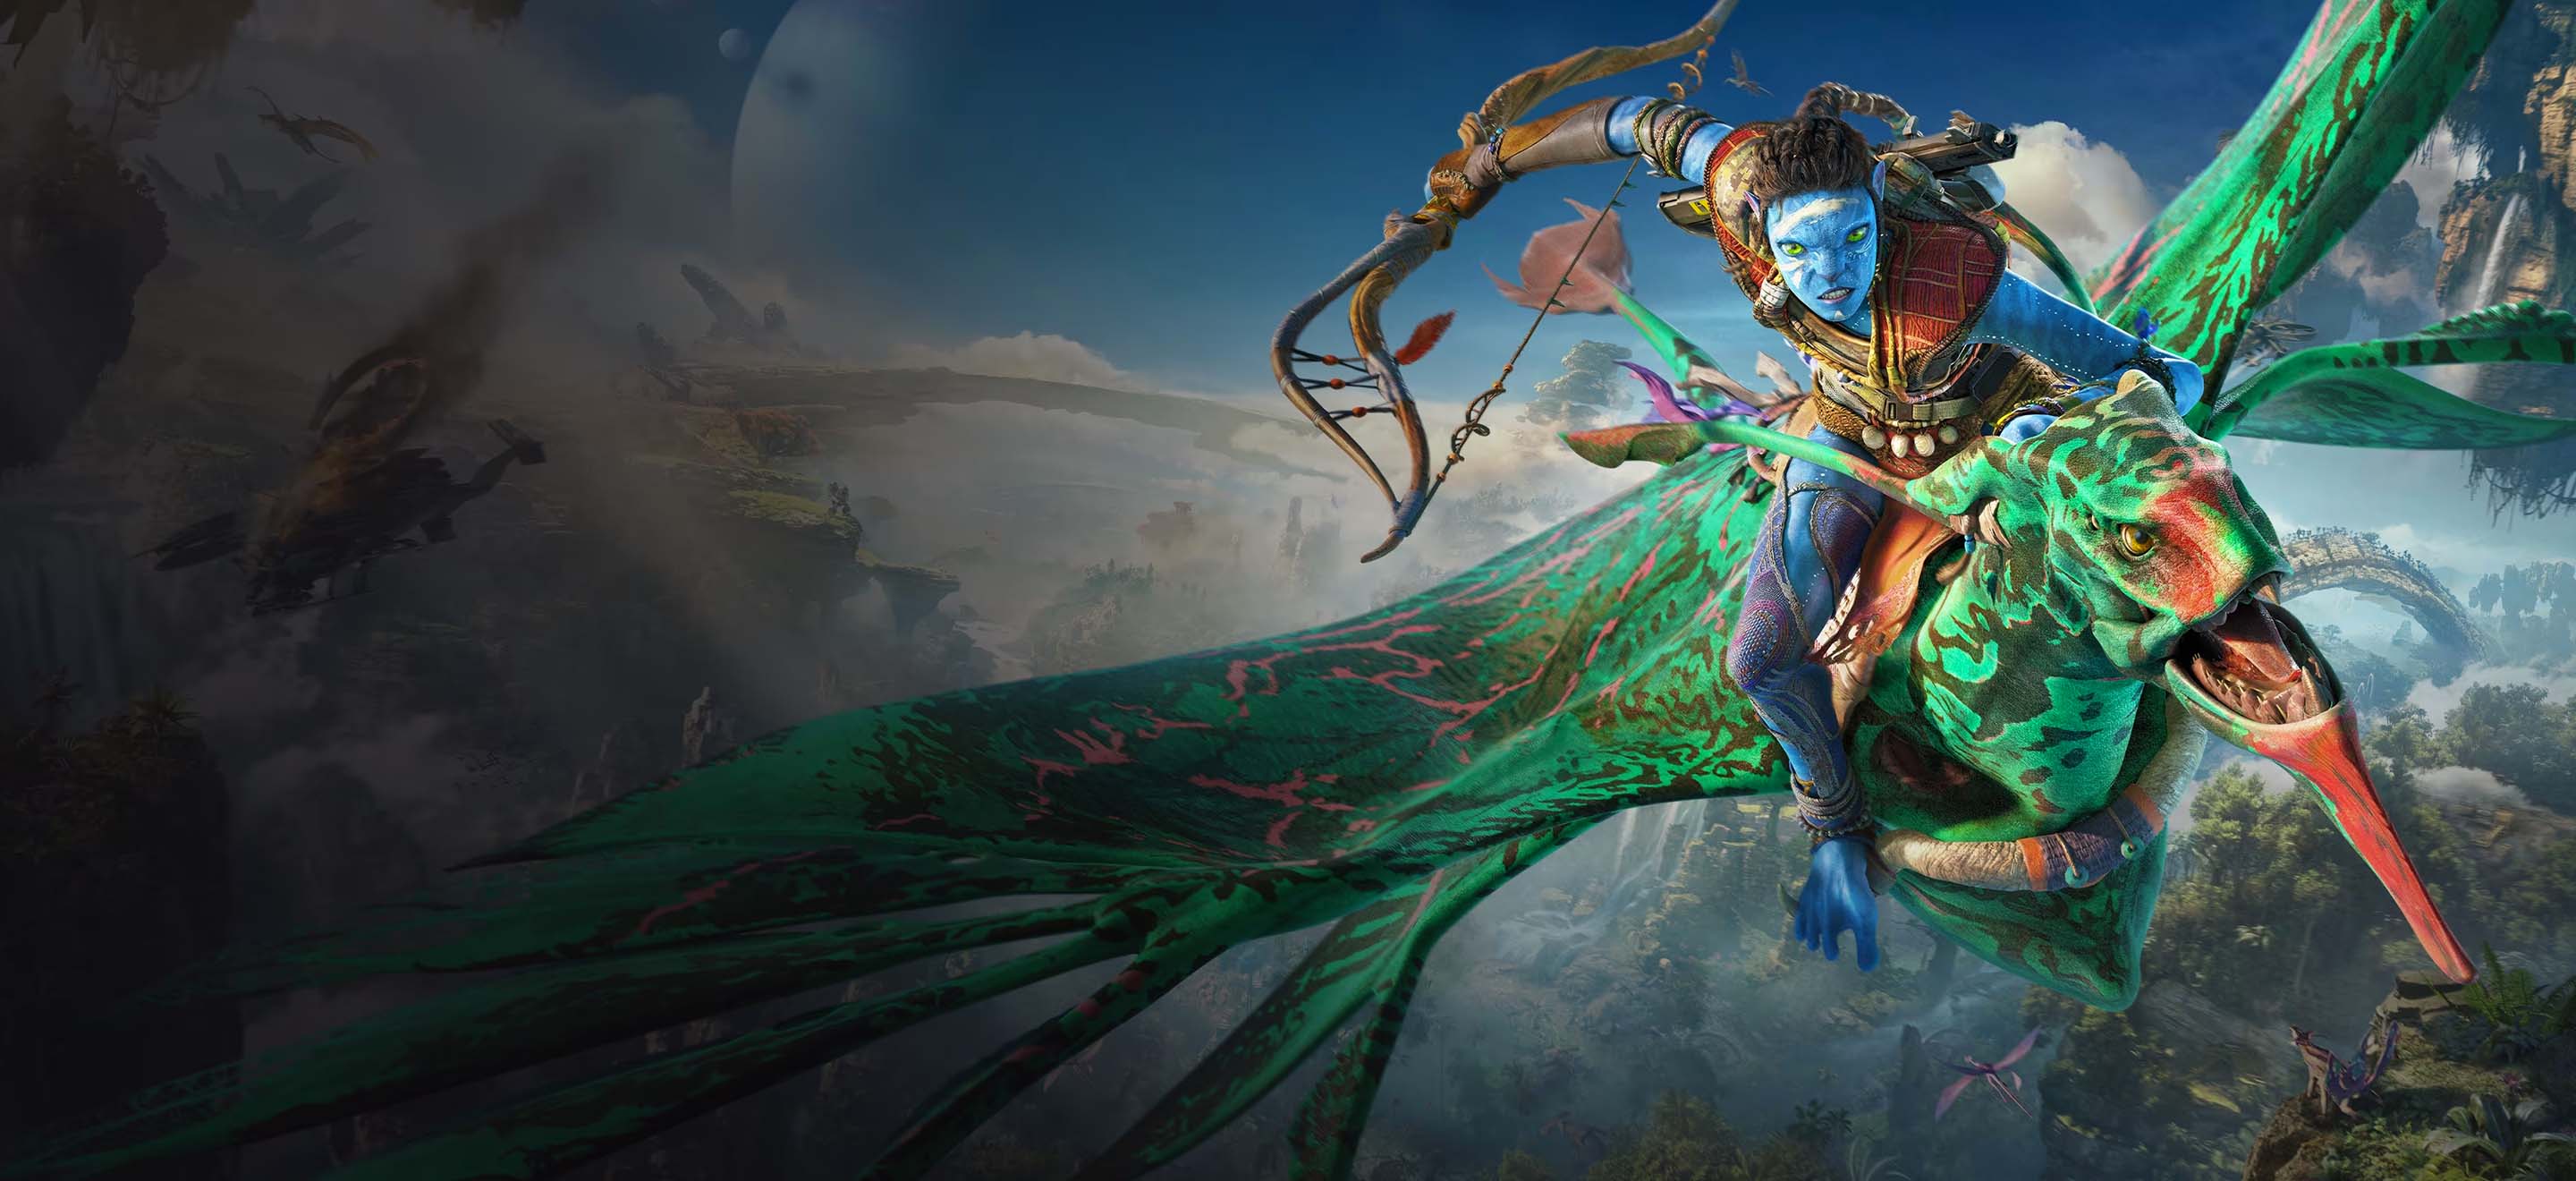 Avatar : Frontiers of Pandora pourrait faire revenir la 3D dans le jeu vidéo